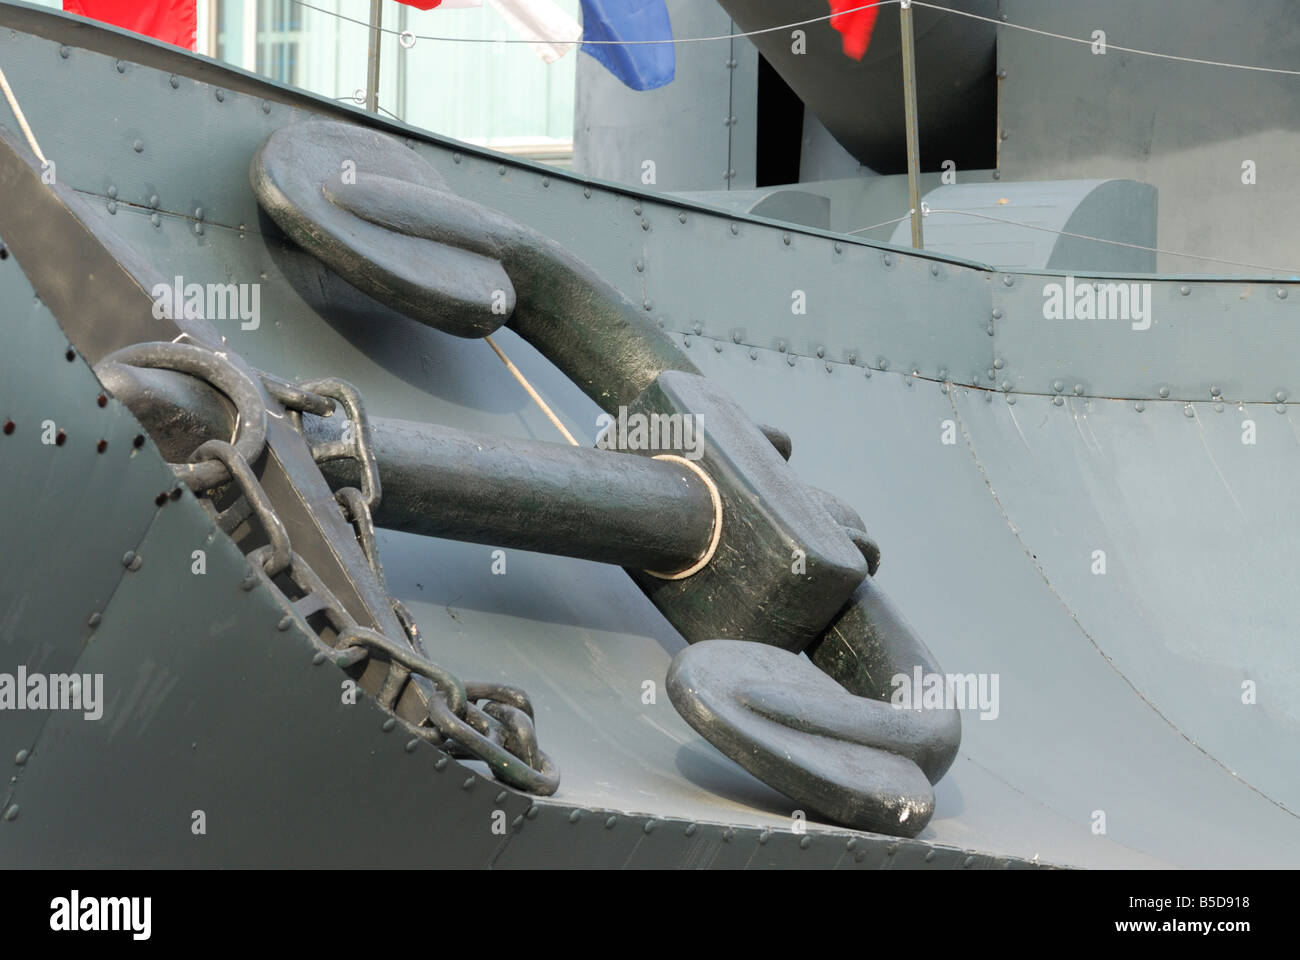 Eine Schlacht liefern Dekoration des russischen Films Admiral Moskau Russland Stockfoto